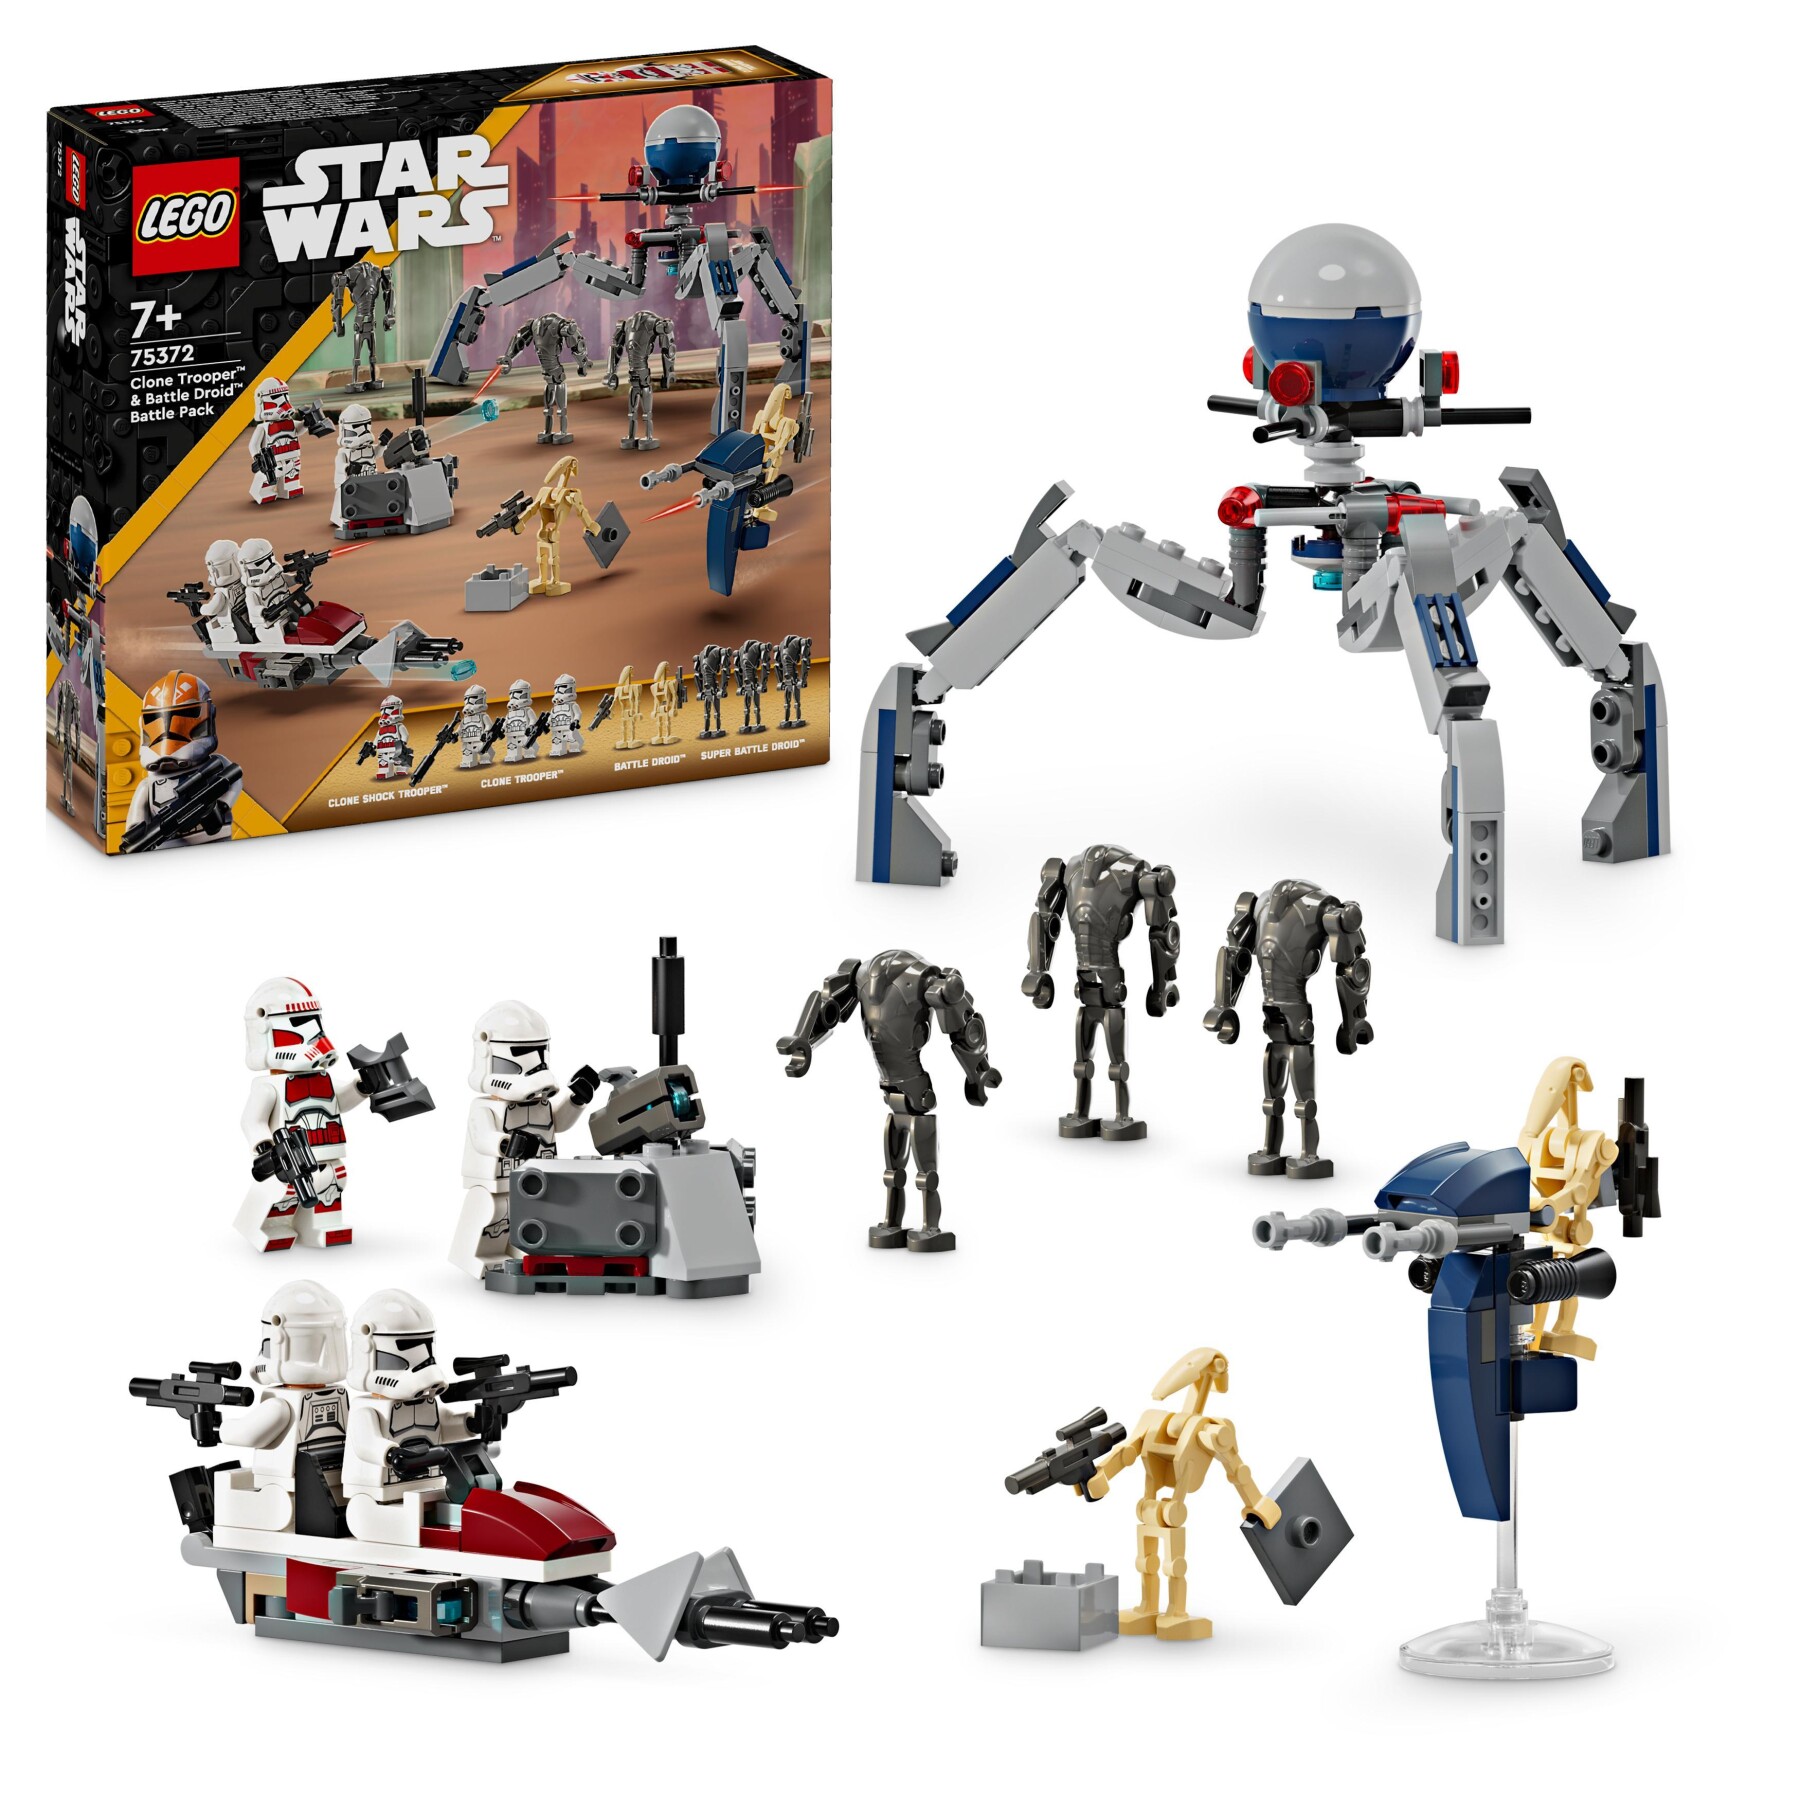 Lego star wars 75372 battle pack clone trooper e battle droid con veicolo giocattolo speeder bike, idea regalo bambini 7+ anni - LEGO® Star Wars™